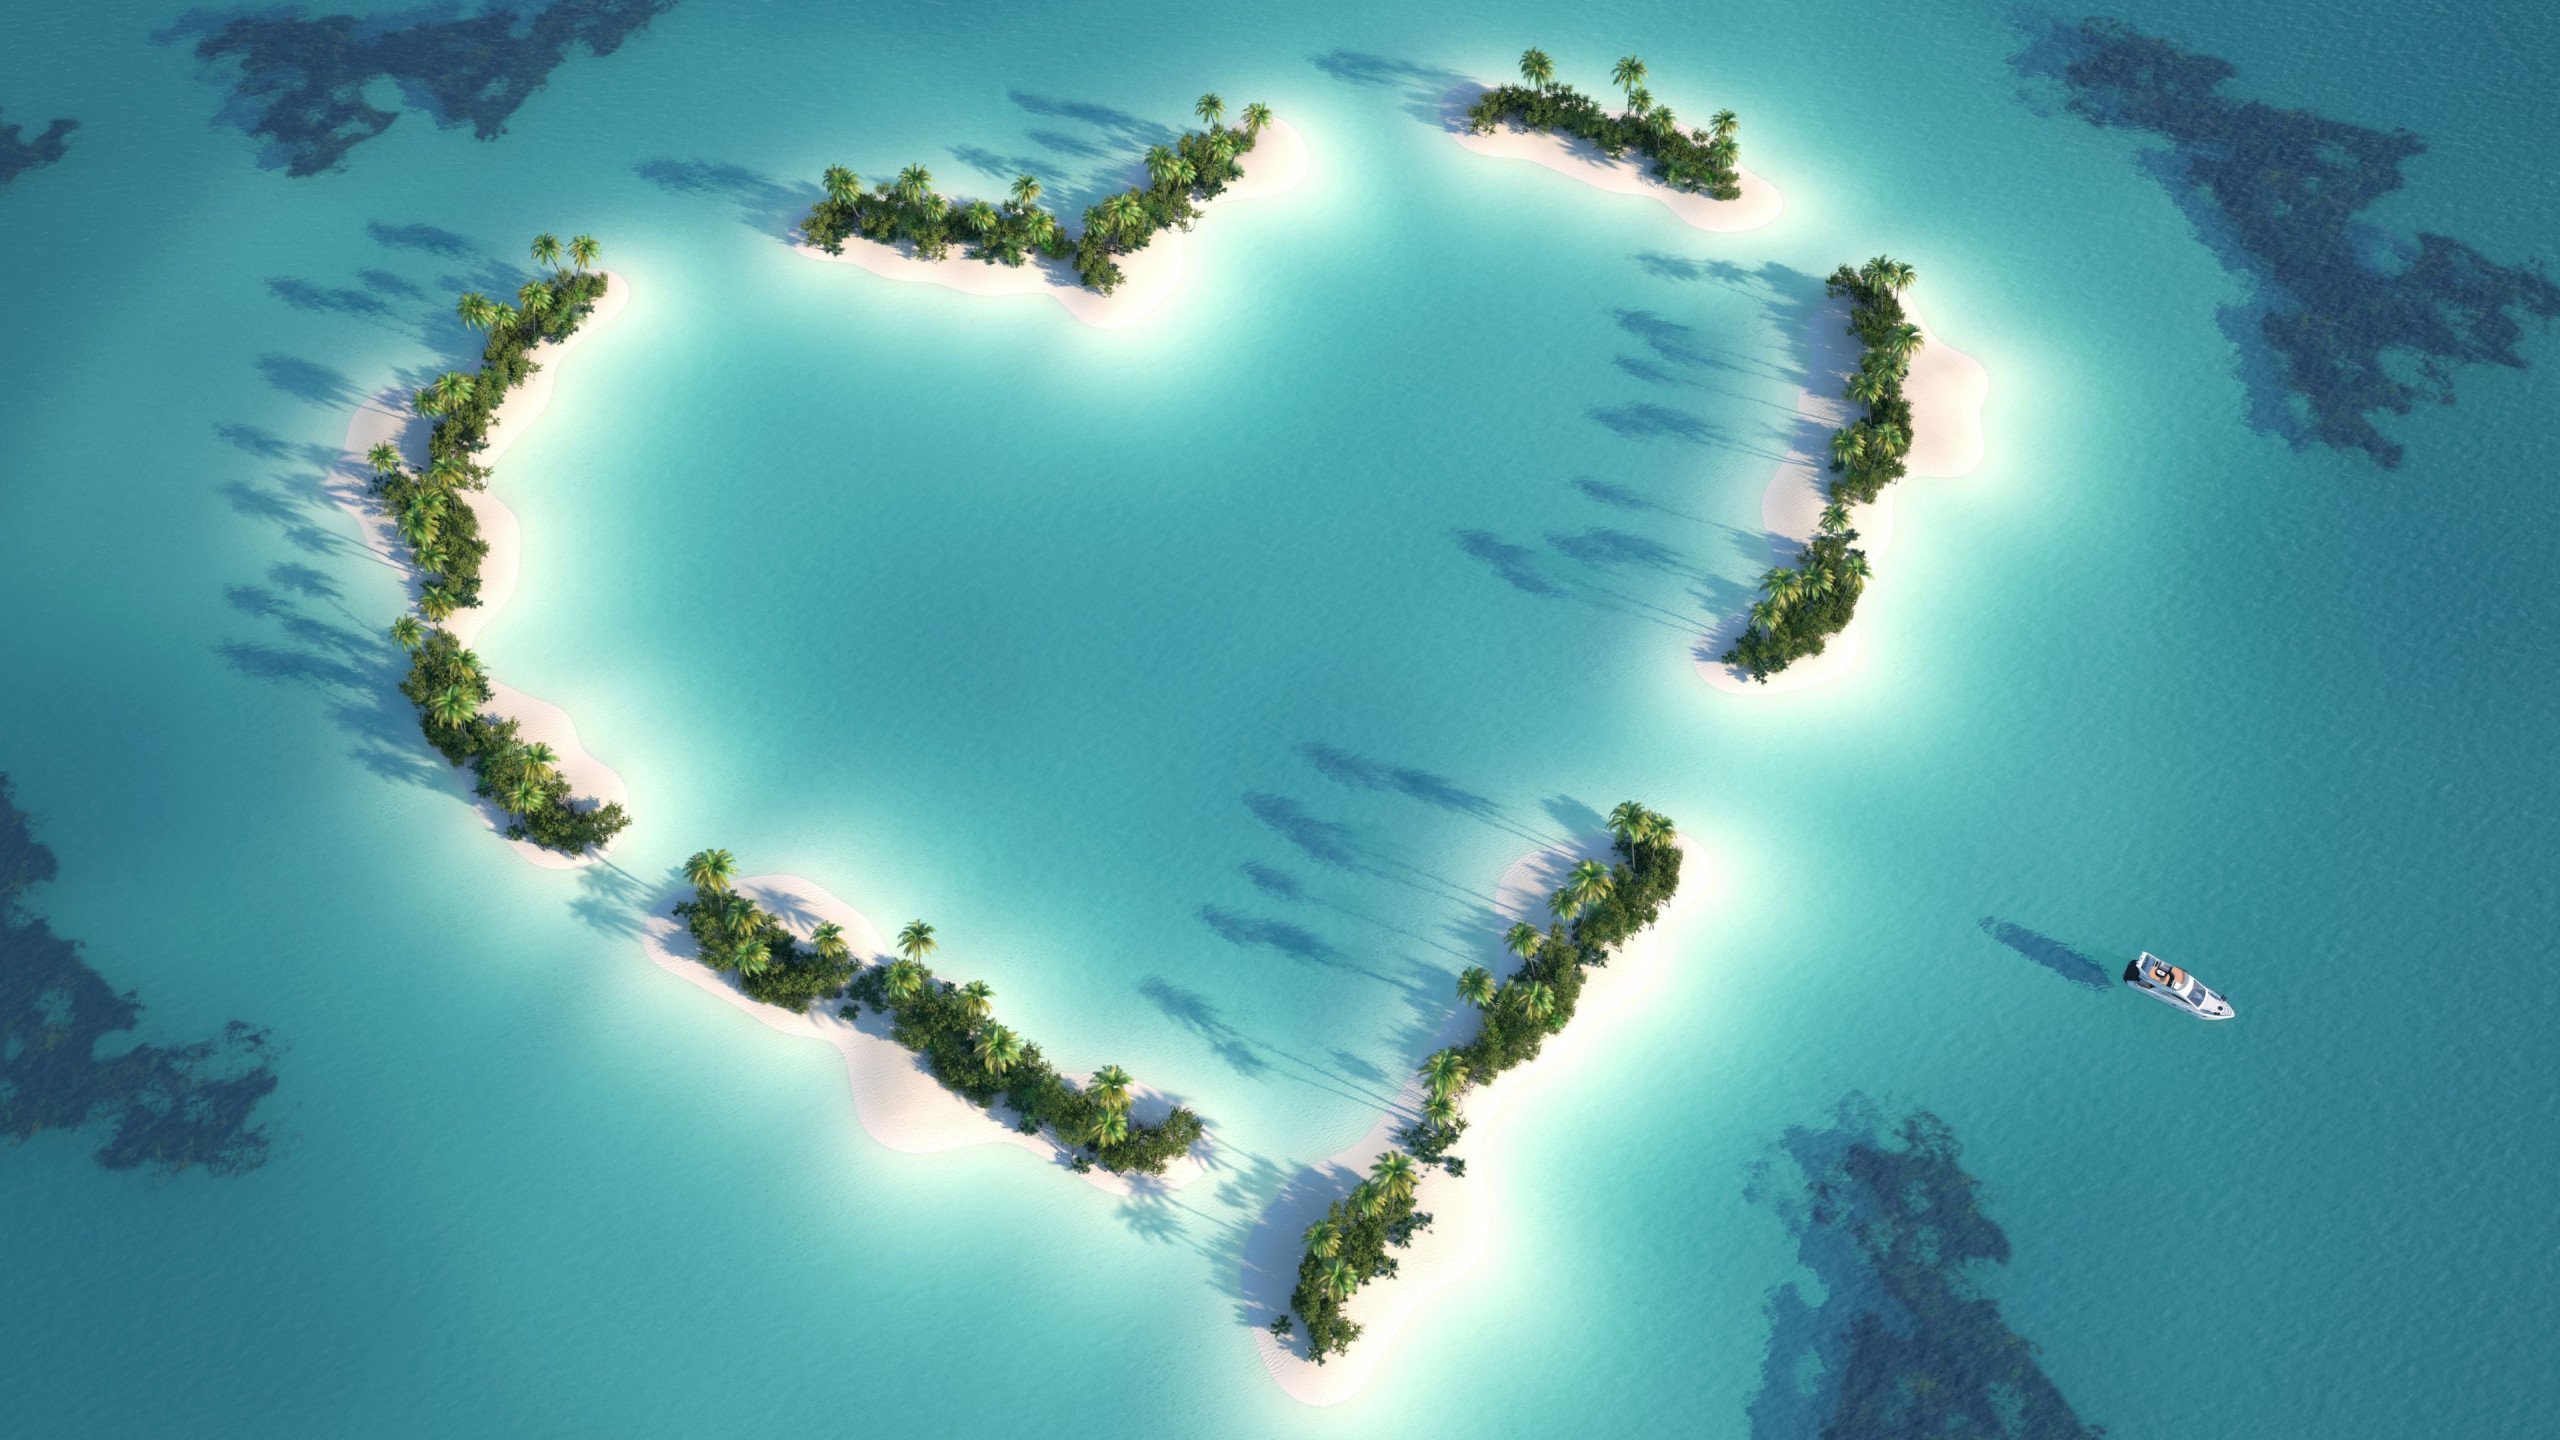 Обои Мальдивы, 5k, 4k, Индийский Океан, Лучшие пляжи мира, остров, пальмы,  любовь, Maldives, 5k, 4k wallpaper, Indian Ocean, Best Beaches in the  World, island, palms, love, Природа #5307